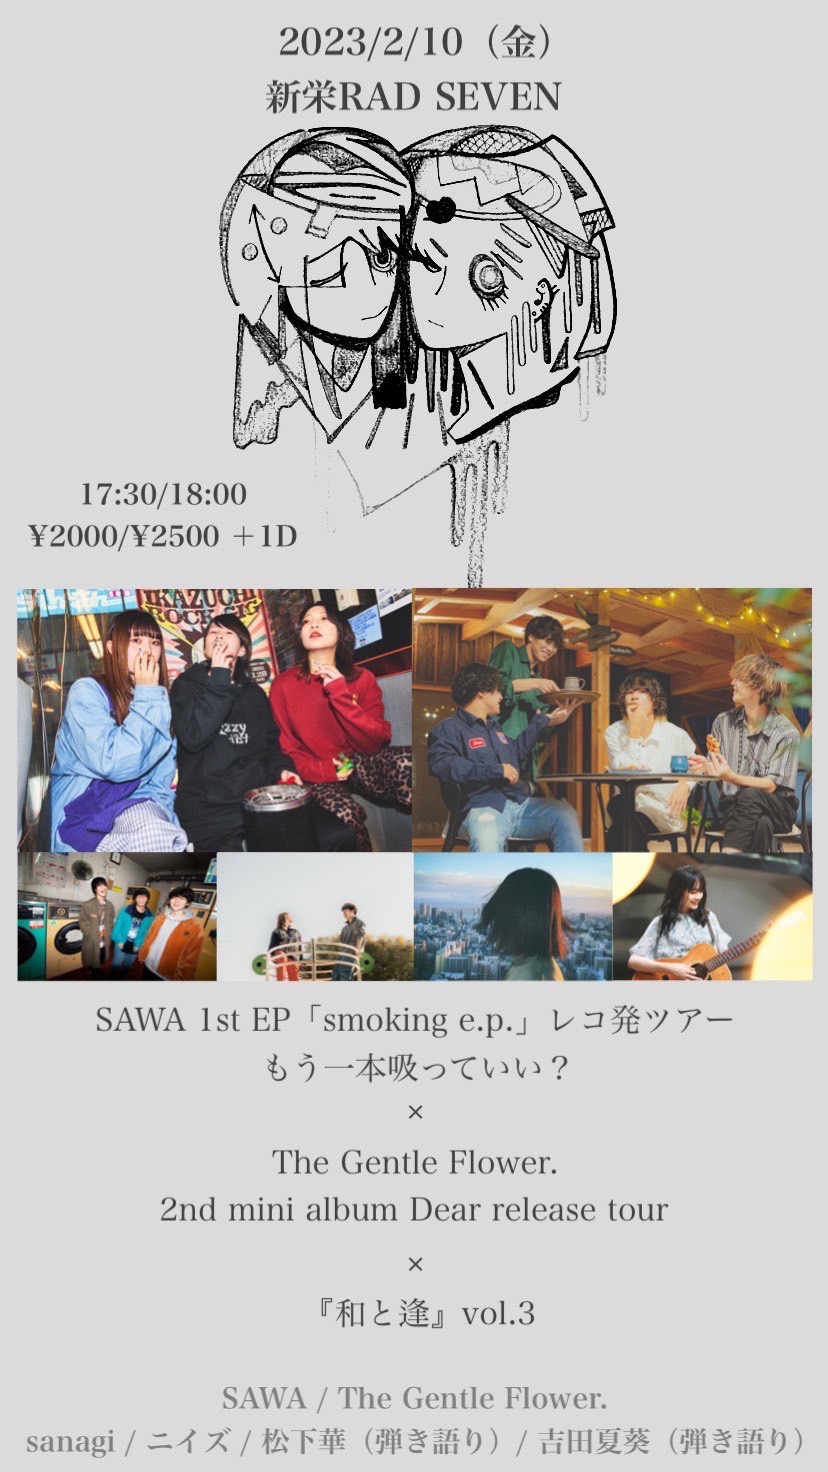 『和と逢』vol.3 SAWA Ist EP「smoking e.p.」レコ発ツアーもう一本吸っていい? × The Gentle Flower. 2nd mini album Dear release tour